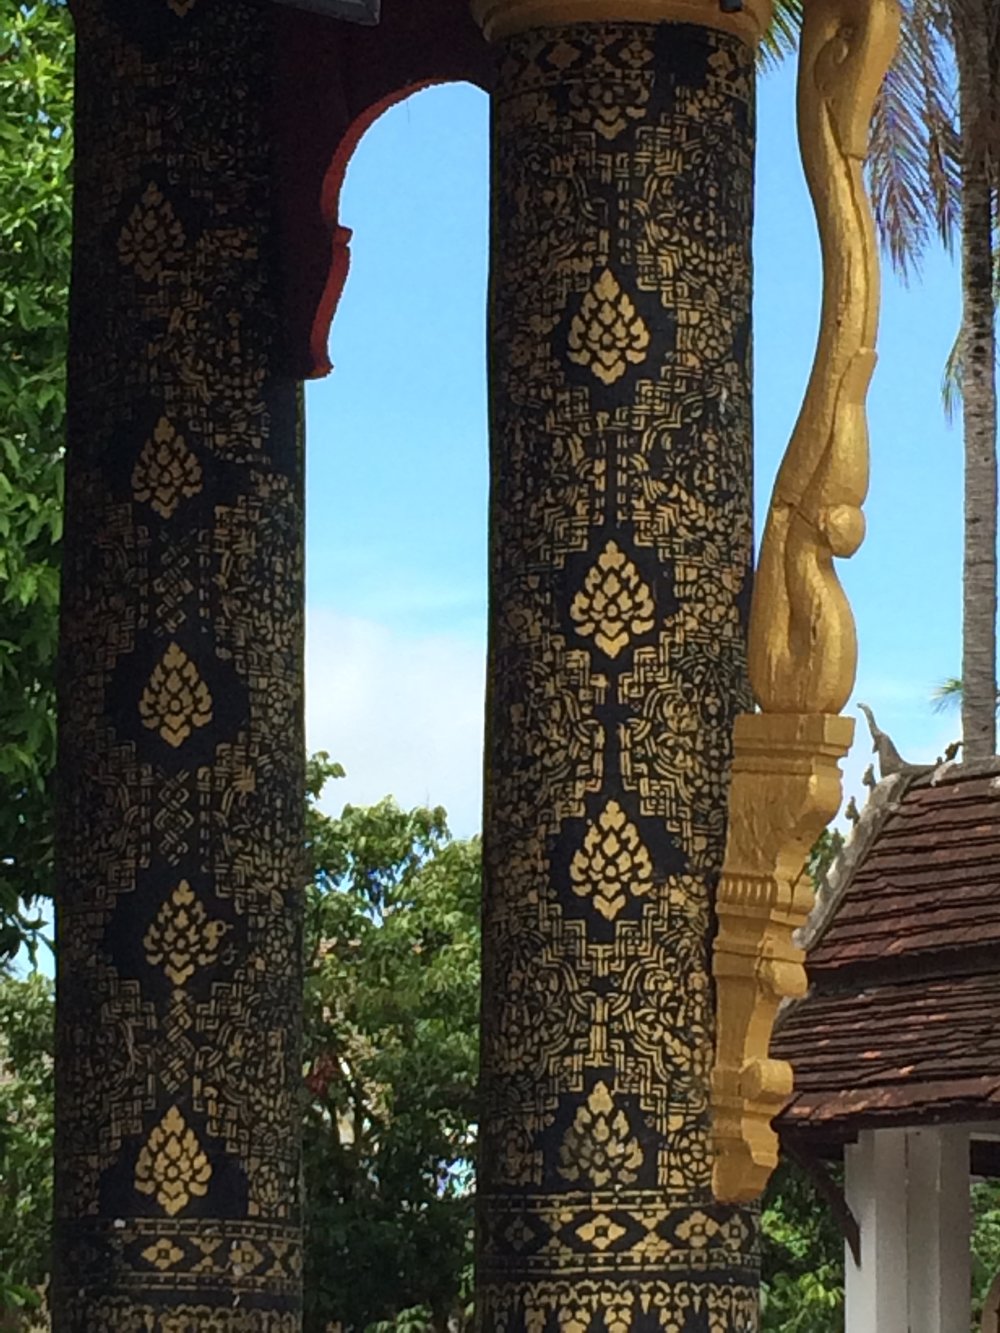 Decorative arts in Lao temple